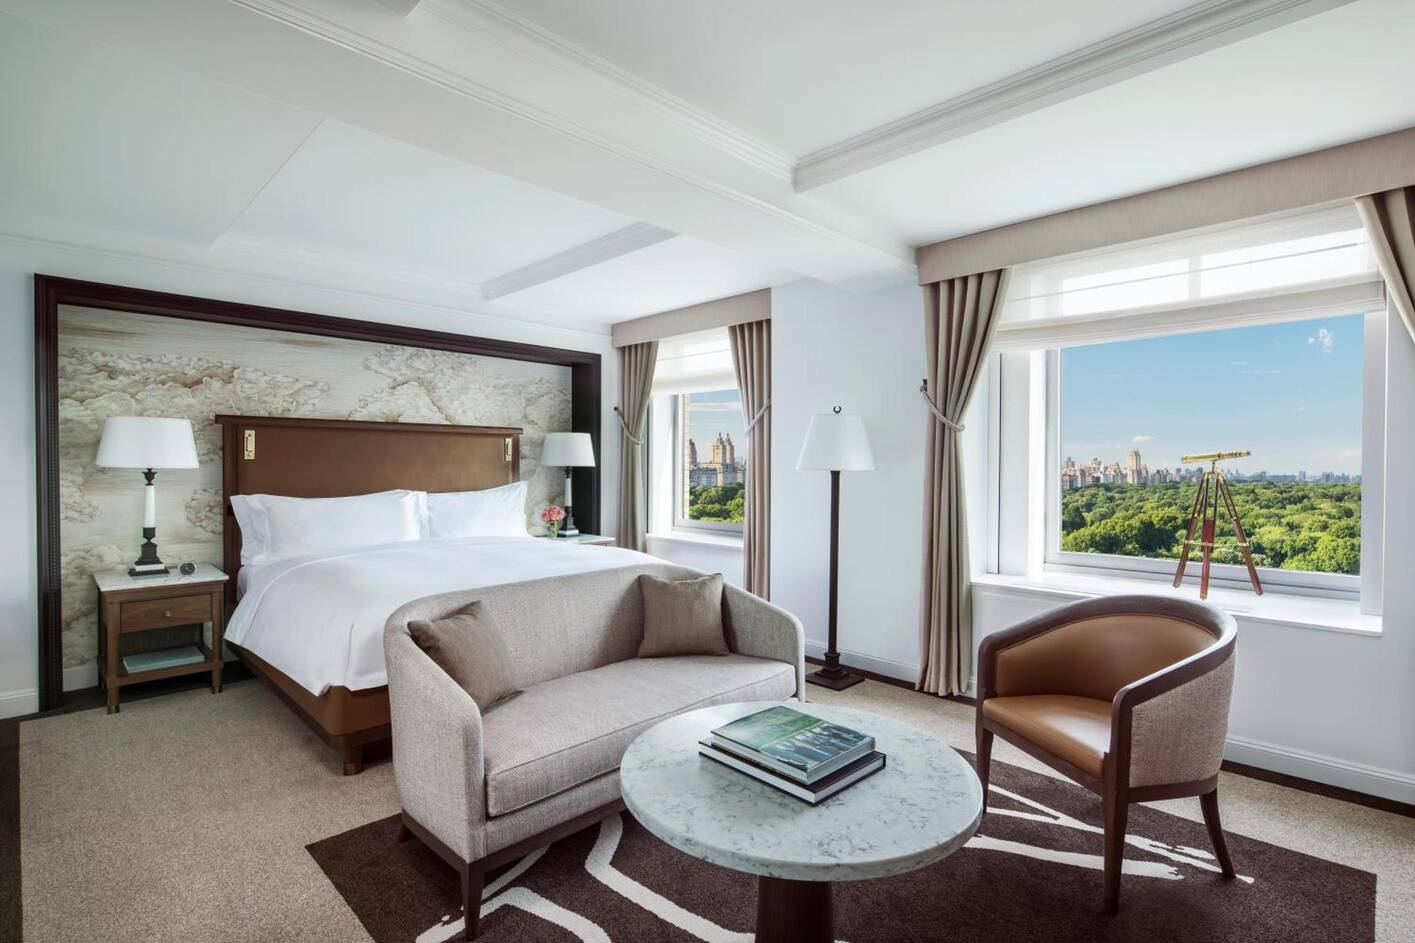 The Ritz-Carlton cuenta con habitaciones sofisticadas, y es uno de los hoteles más lujosos de Nueva York